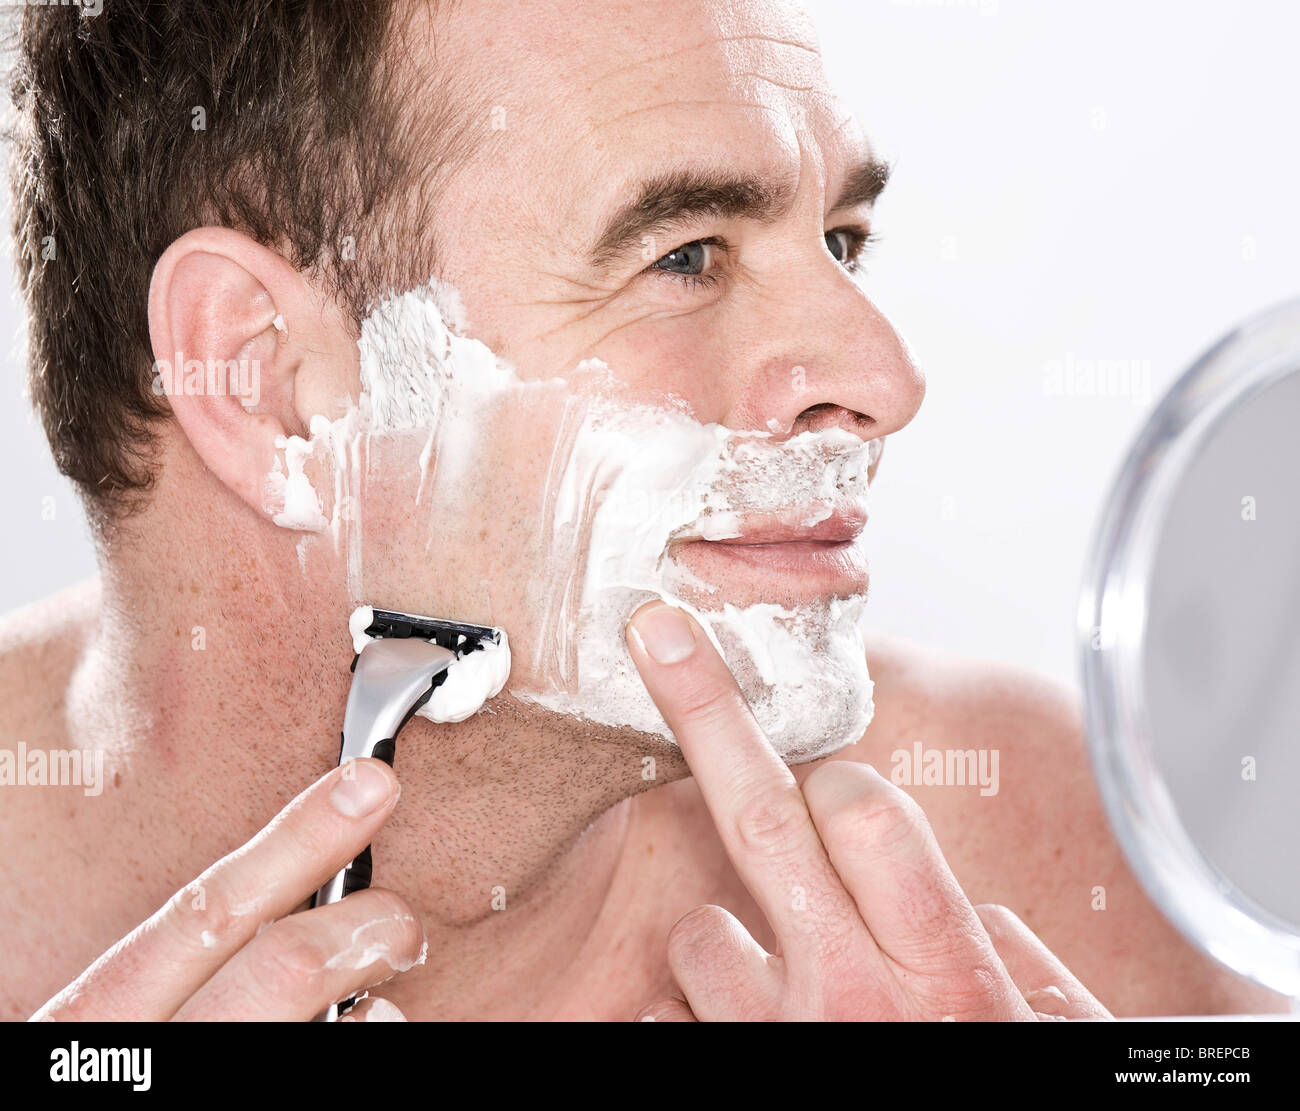 Побрить перед операцией. Бритье лица. Мужское бритье лица. Бритье кожи.